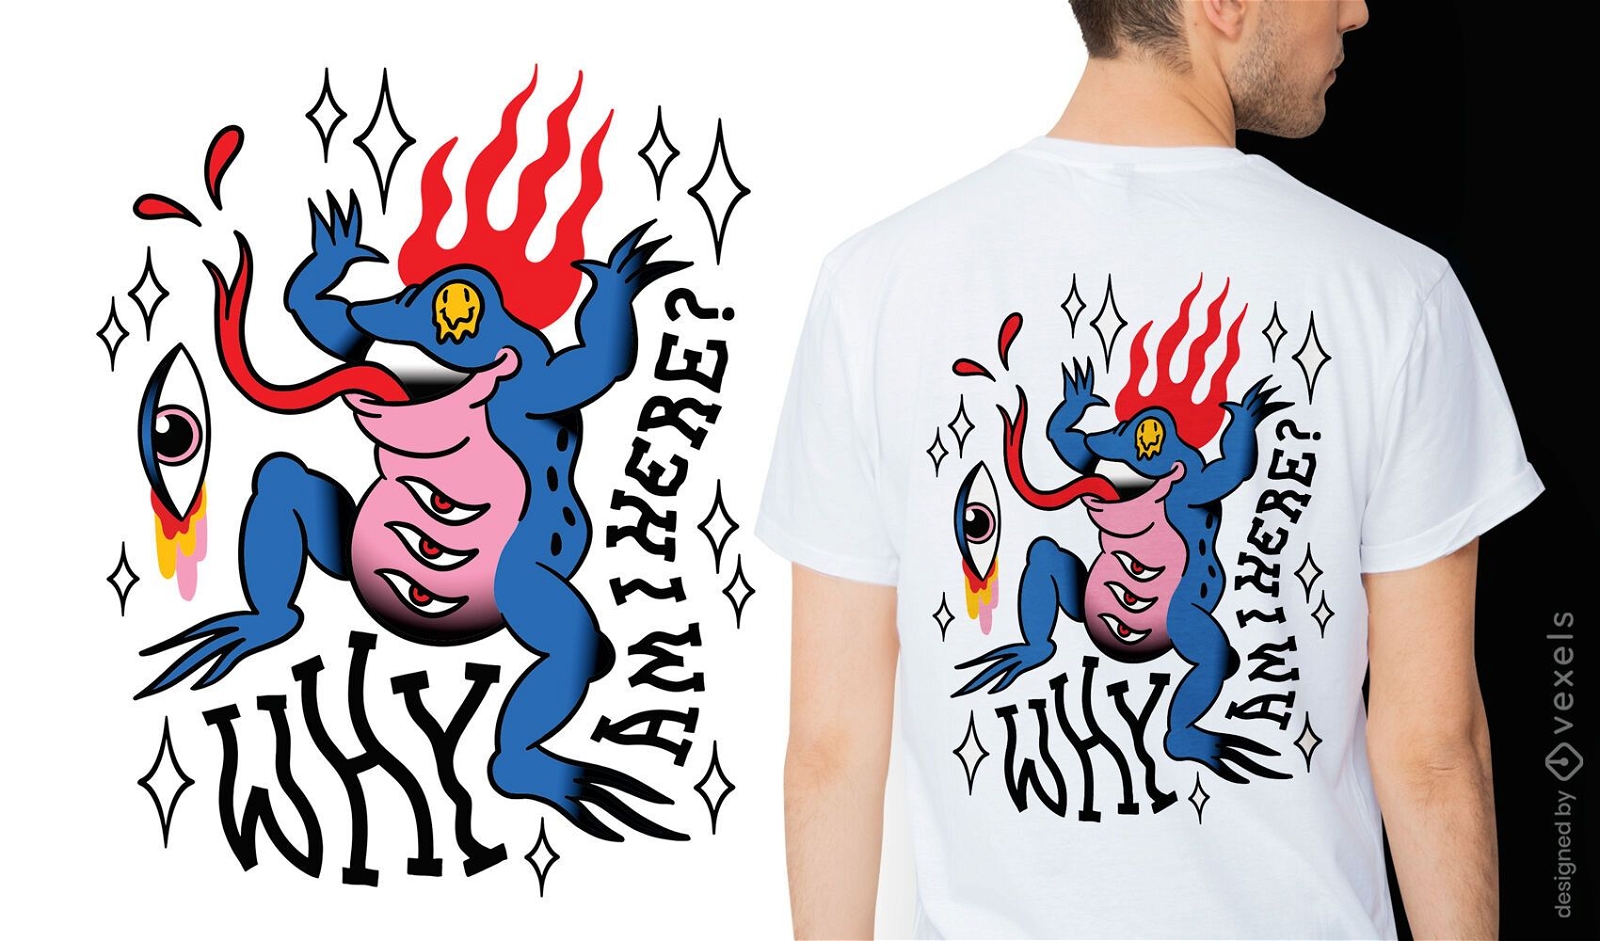 Frosch auf Feuer trippy Zitat T-Shirt Design